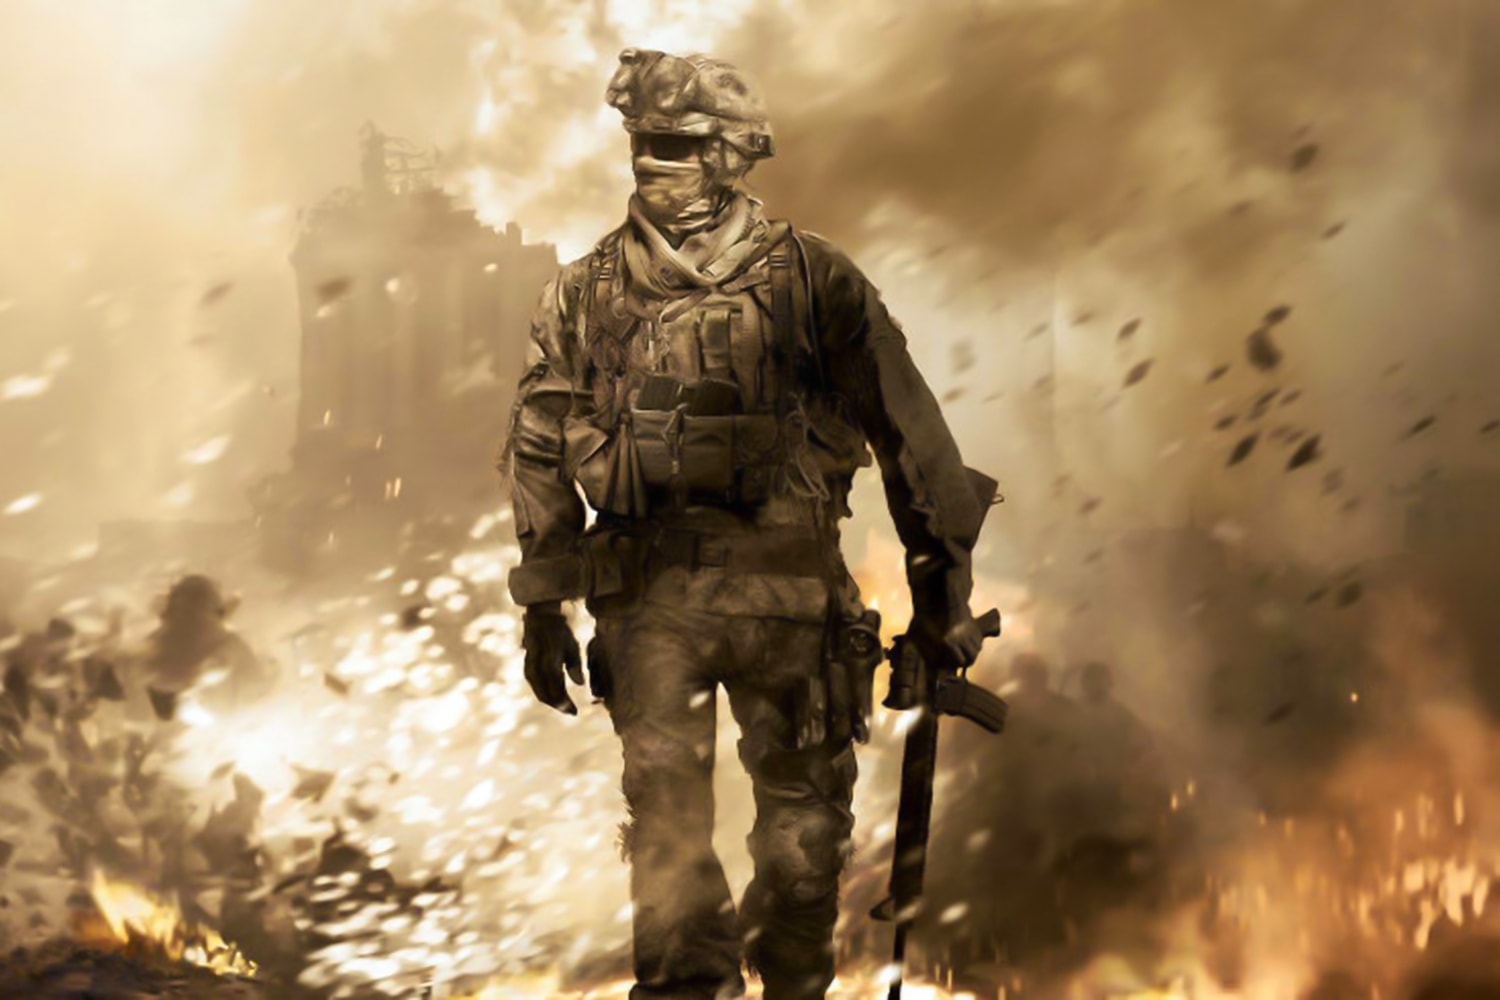  Call of Duty: Advanced Warfare - Retrocompatible Xbox